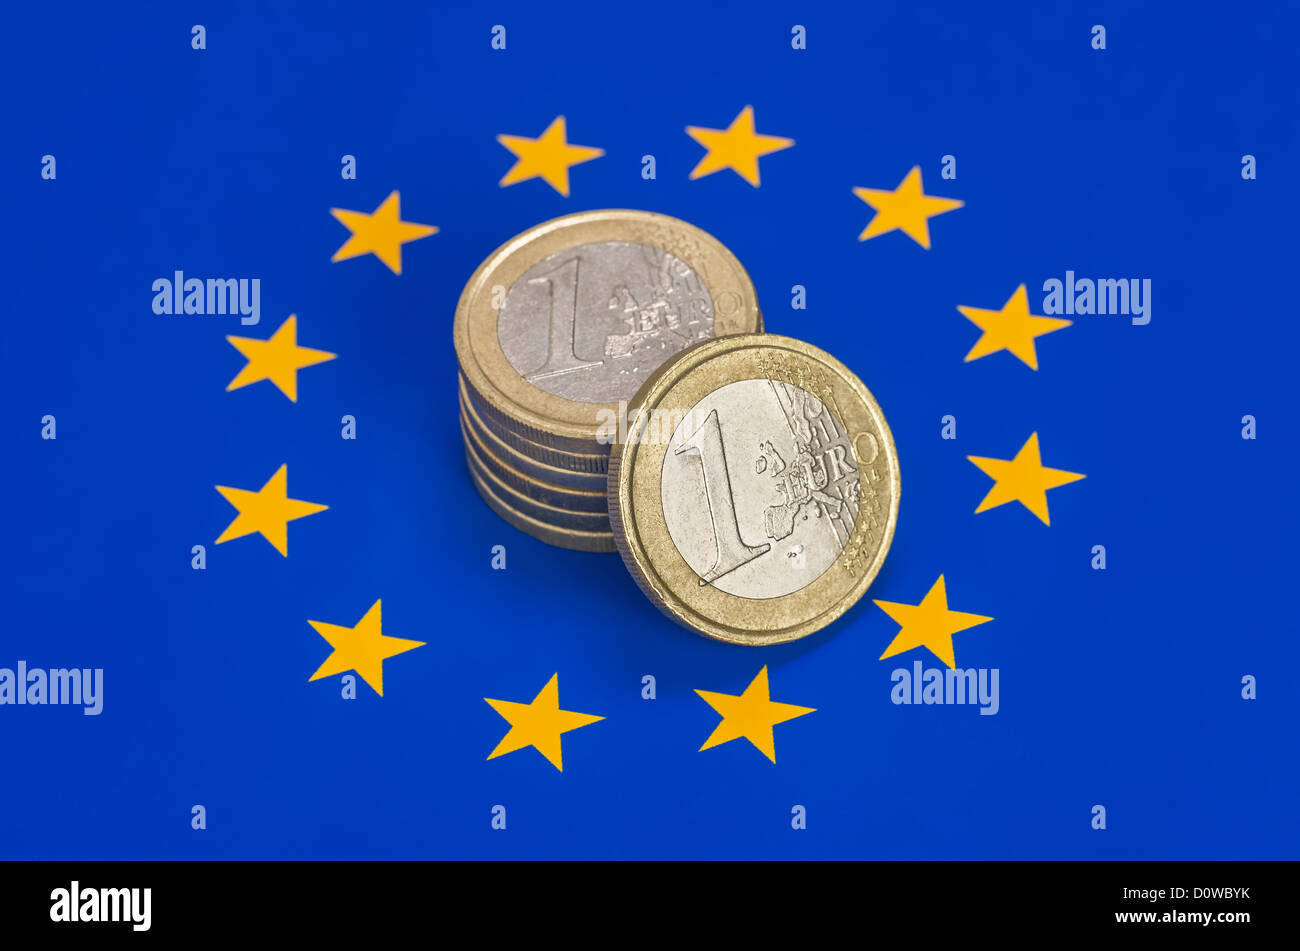 euro coins on european flag Stock Photo